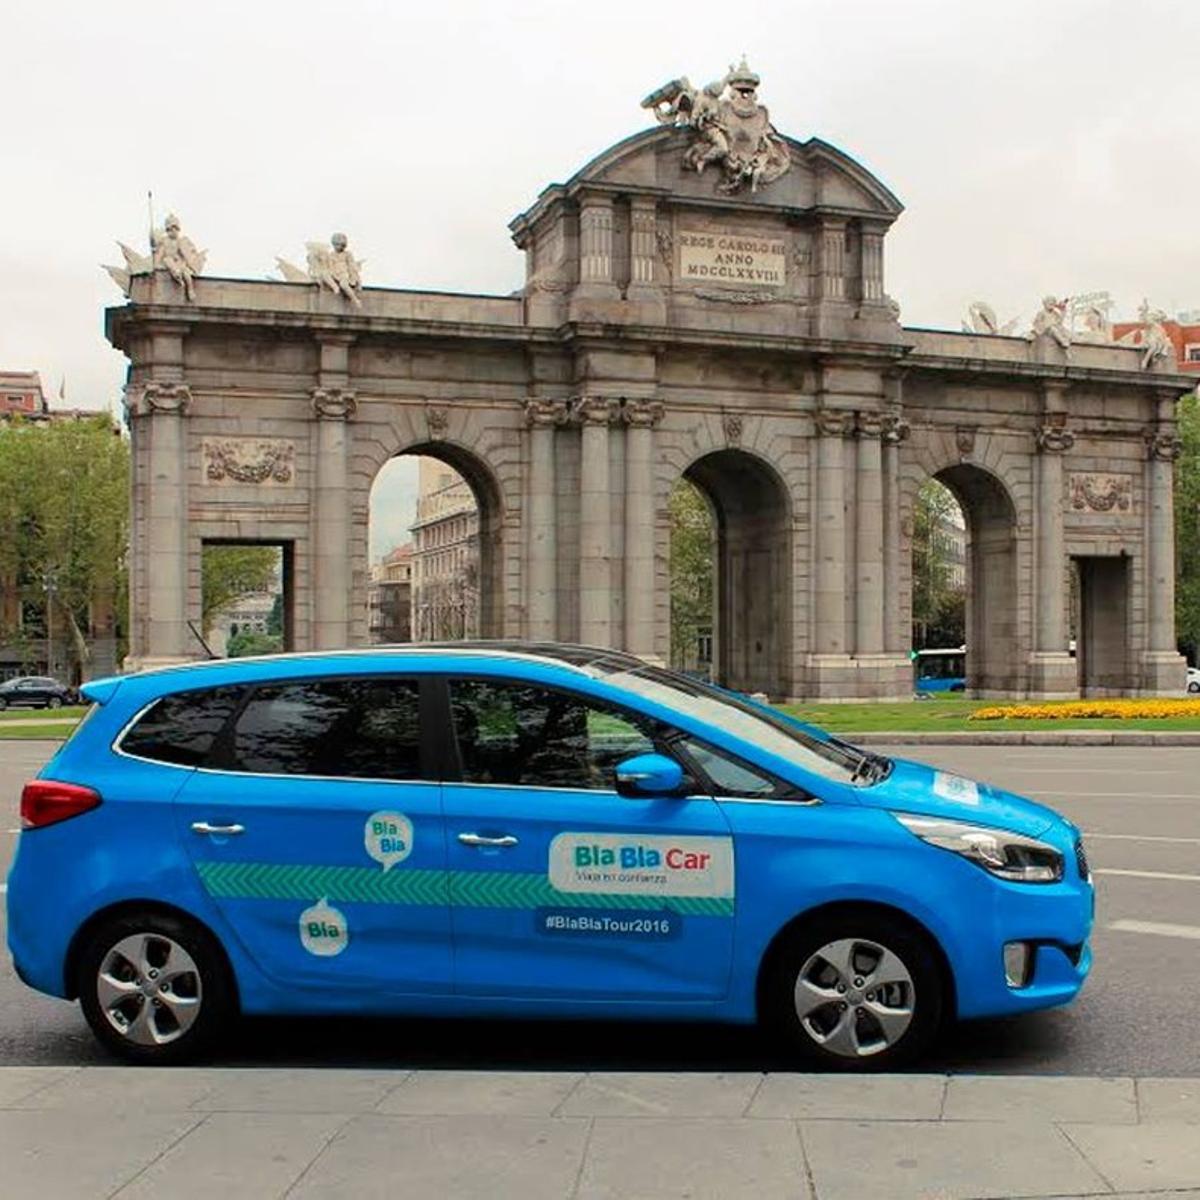 Coche promocional de BlaBlaCar en Madrid.